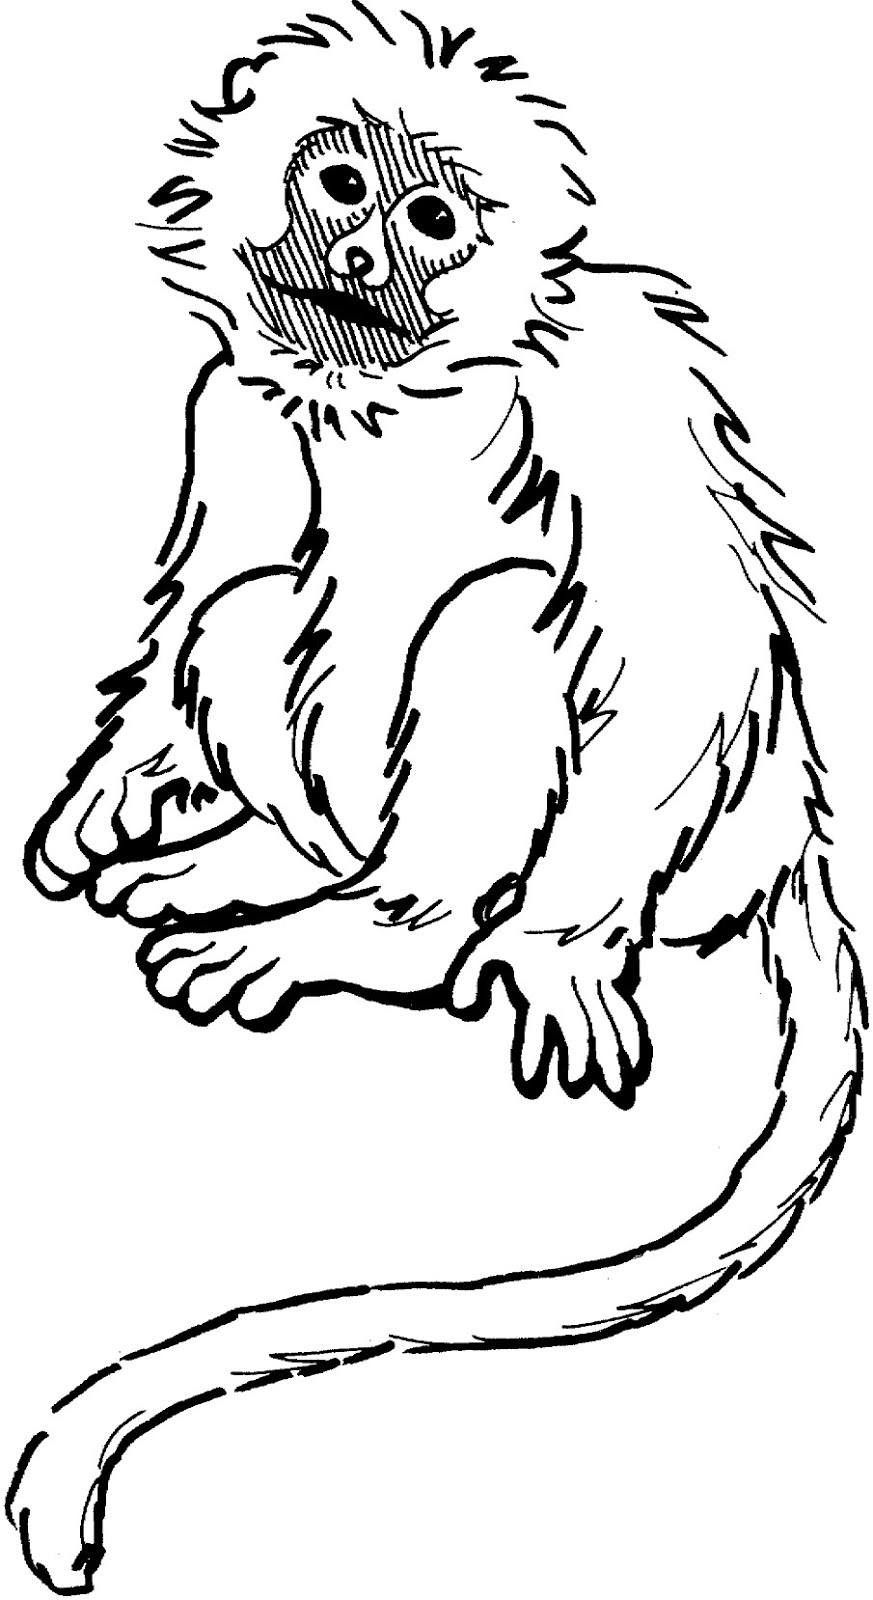  Gambar  Macan Animasi Gratis Download Cikimm com